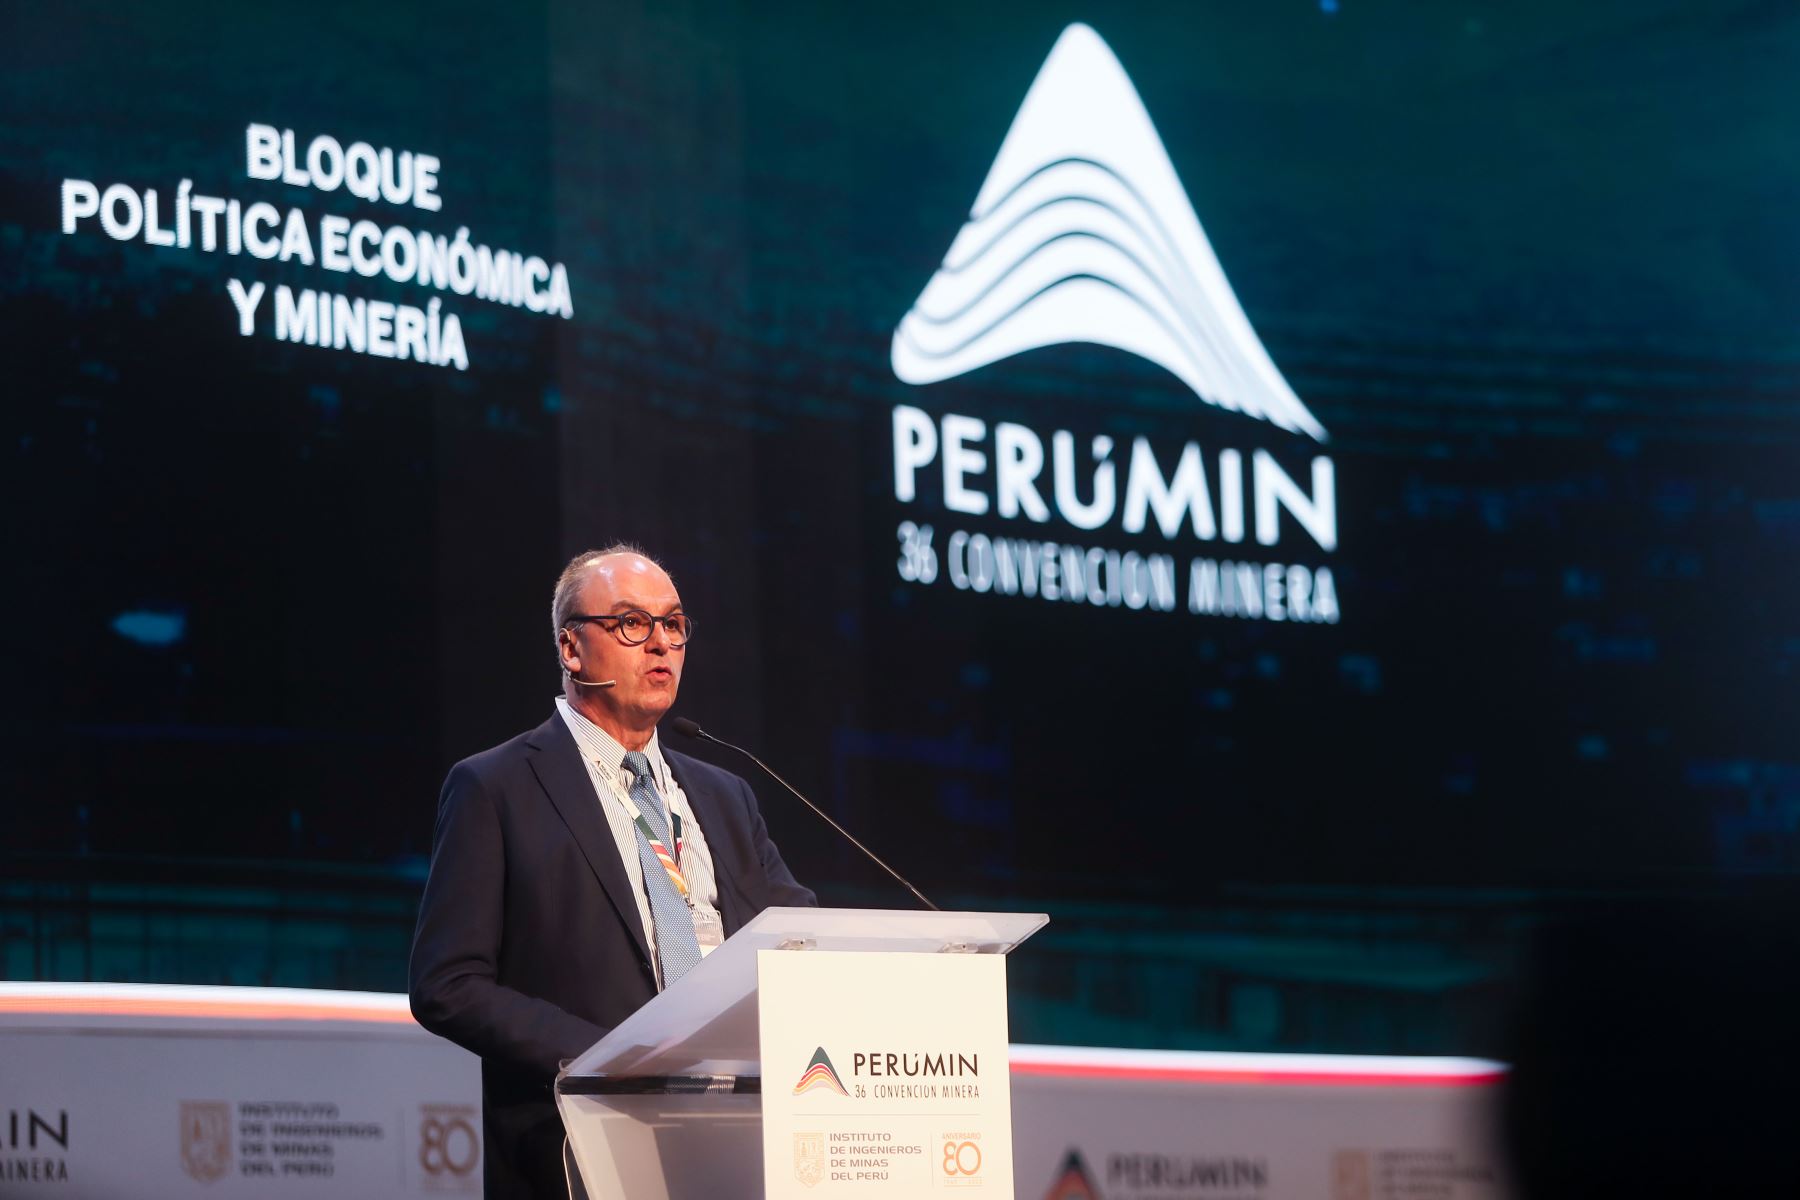 Gaspar Frontini, embajador de la Unión Europea, se hace presente en cumbre minera, Perumin en Arequipa para conferencia sobre política economía y minería Foto: ANDINA/Ricardo Cuba